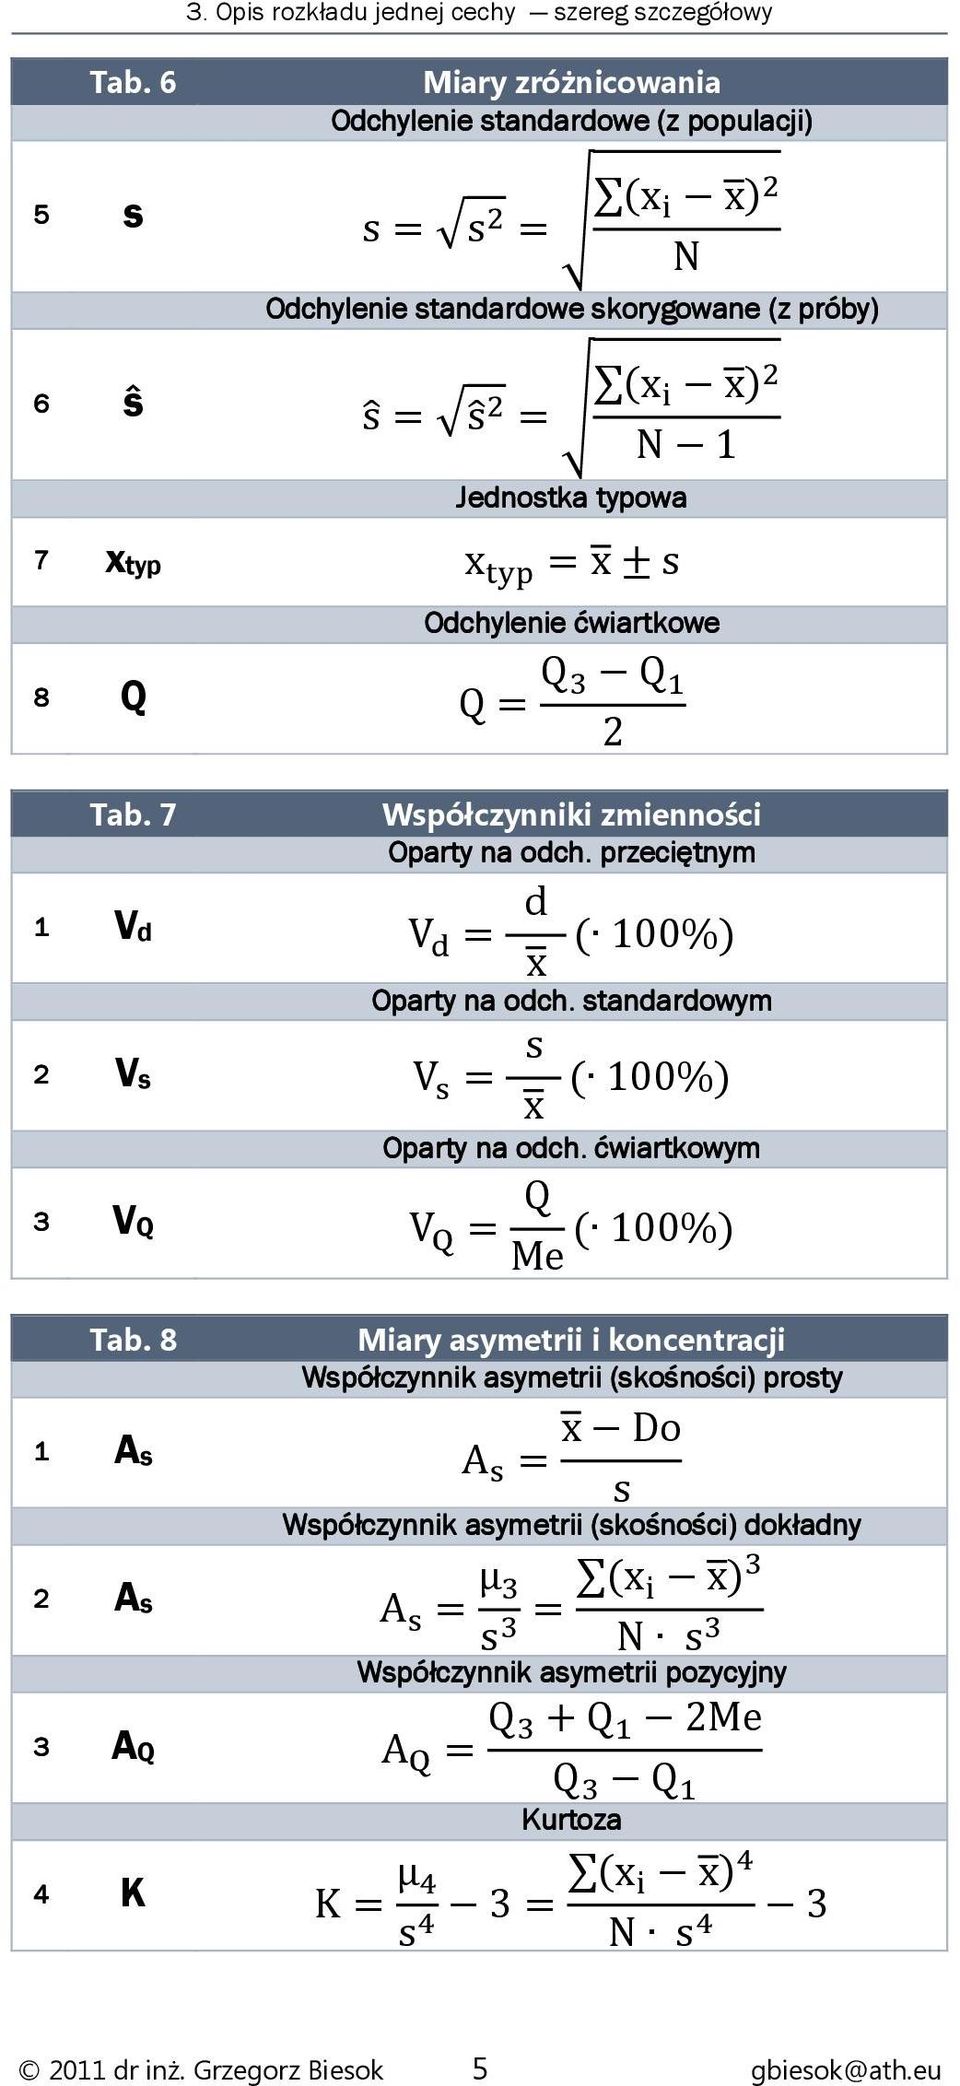 Odchylenie ćwiartkowe 8 Q Q= Q Q 2 Tab. 7 Współczynniki zmienności Oparty na odch. przeciętnym 1 Vd V = d Oparty na odch. standardowym 2 Vs V = s Oparty na odch.